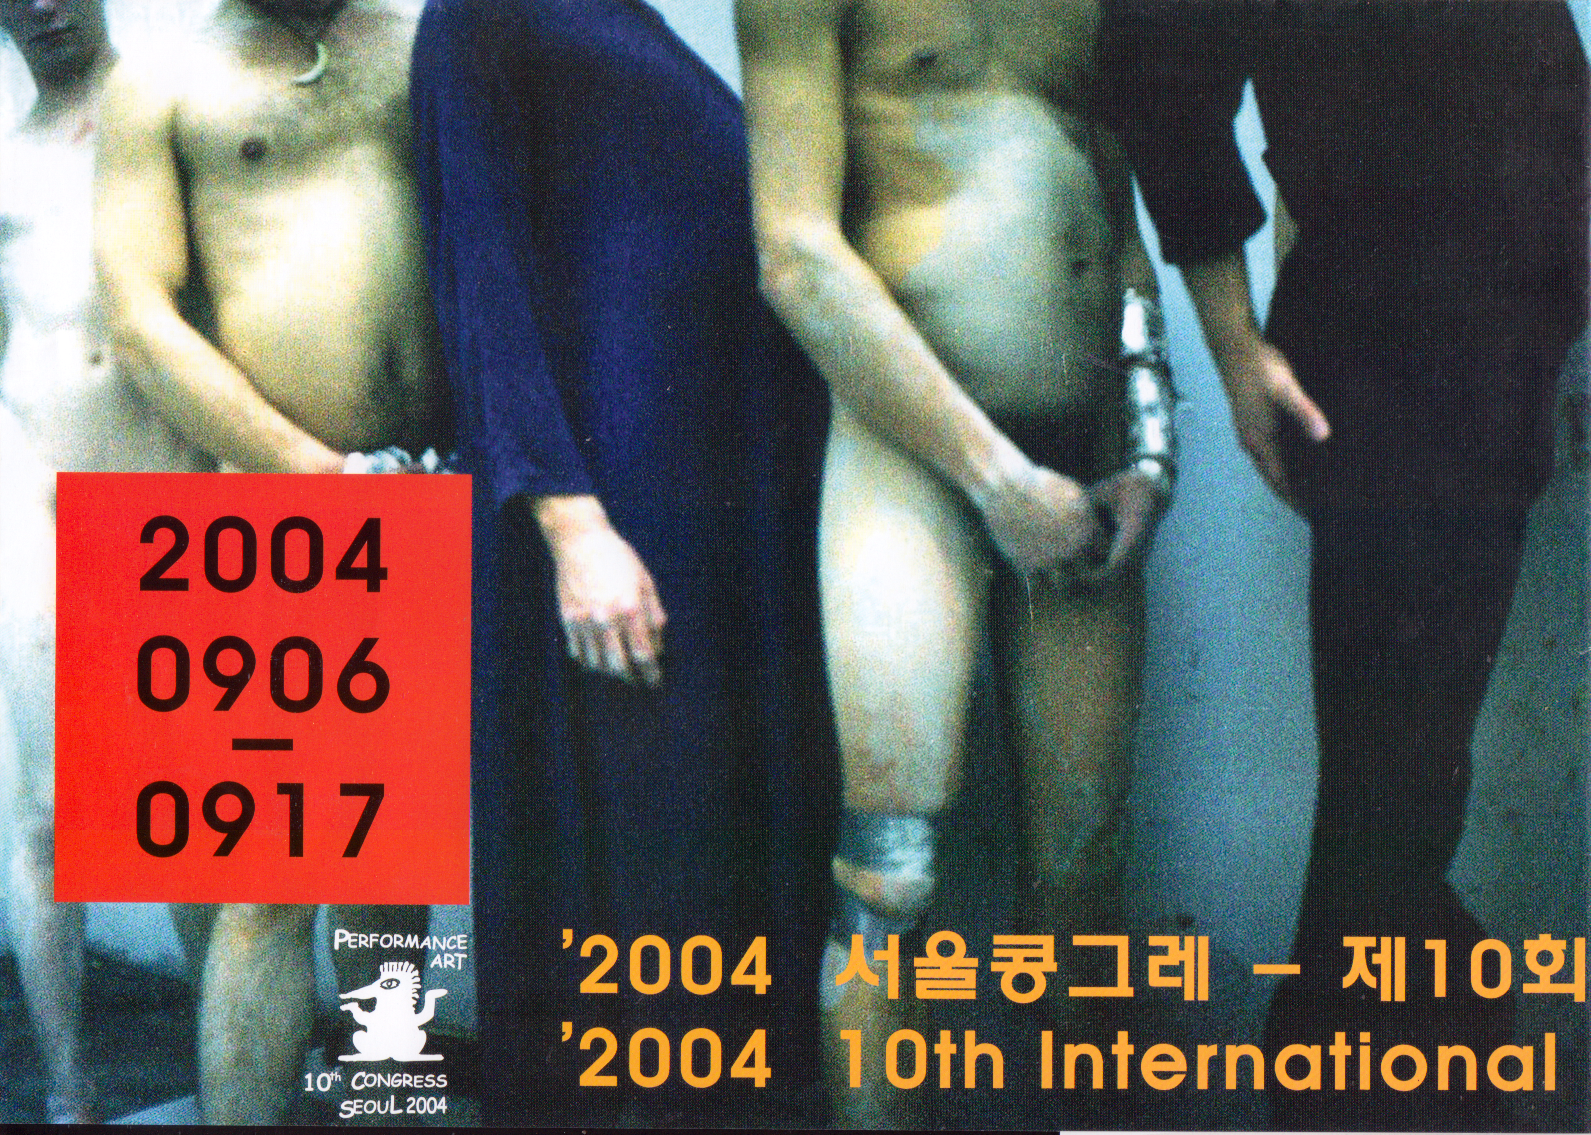 10th International Performance Art Congress